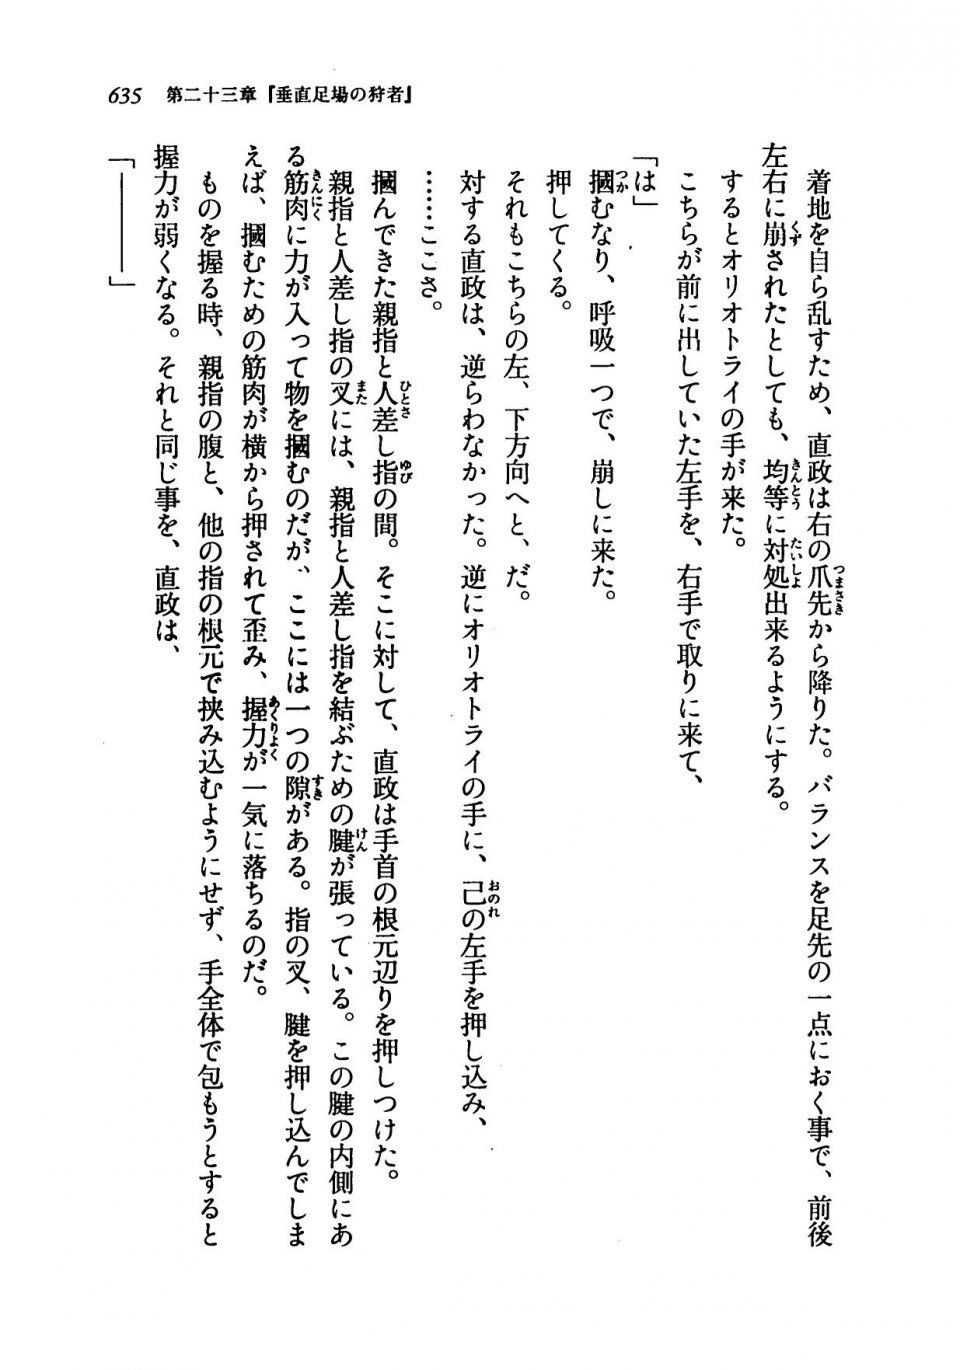 Kyoukai Senjou no Horizon LN Vol 19(8A) - Photo #635